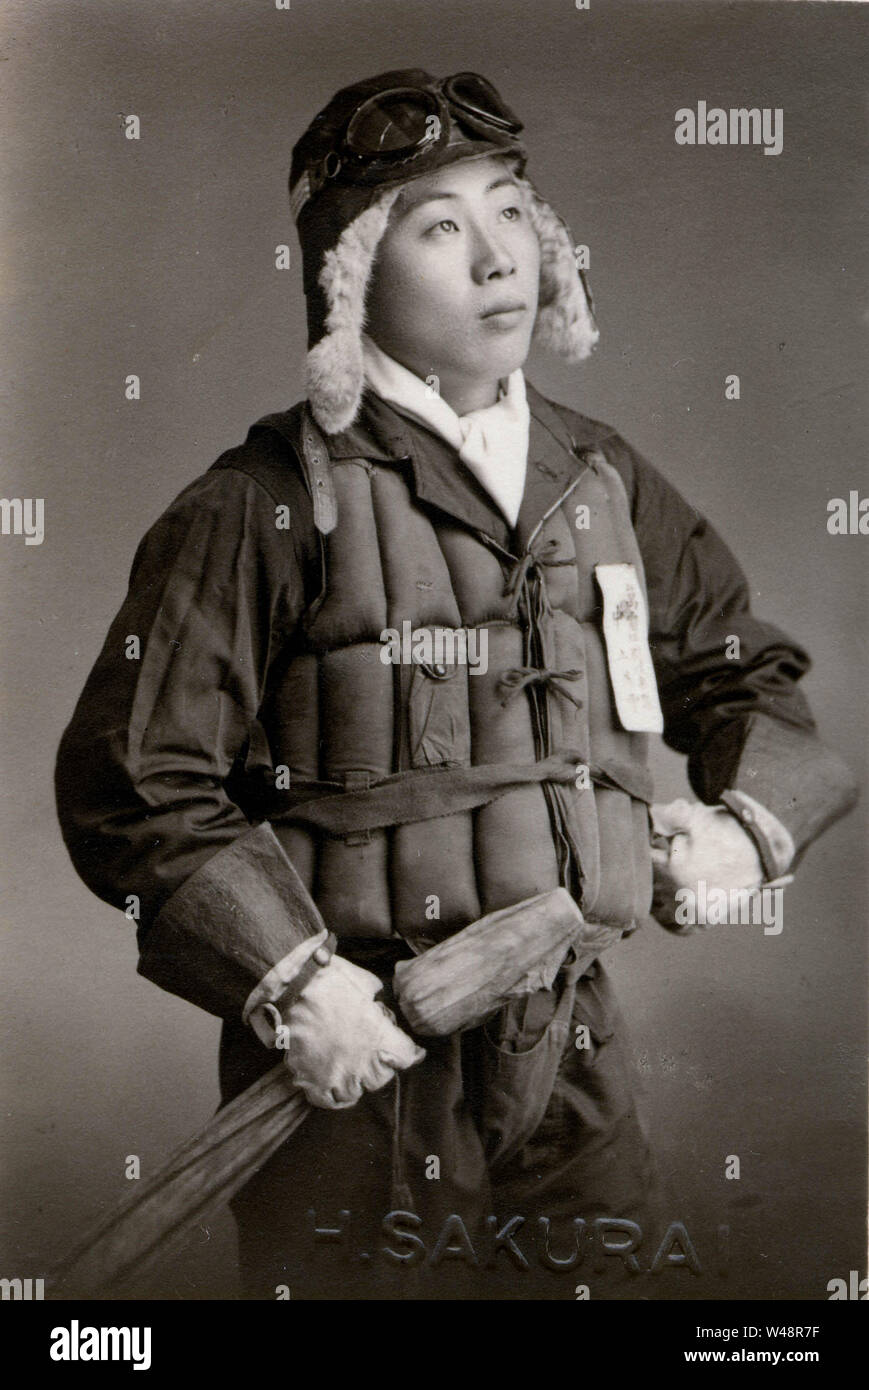 1940 Japan Kamikaze Pilot In Uniform Mitglied Der Tokubetsu